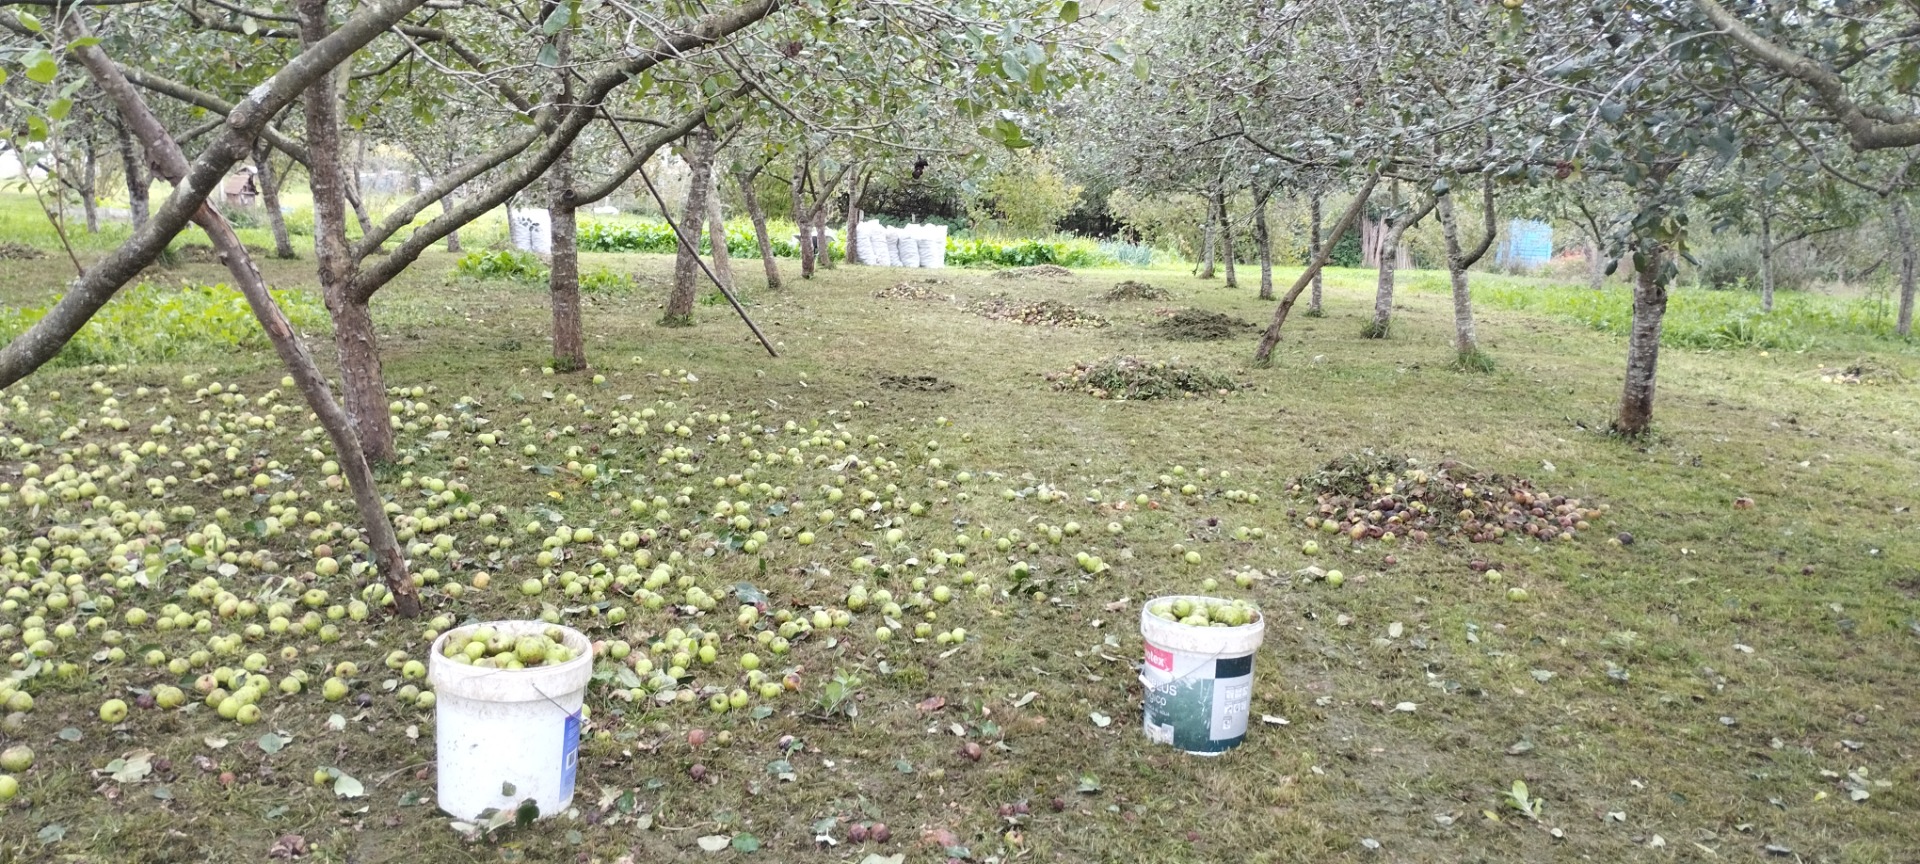  Campo con varios frutos y arboles